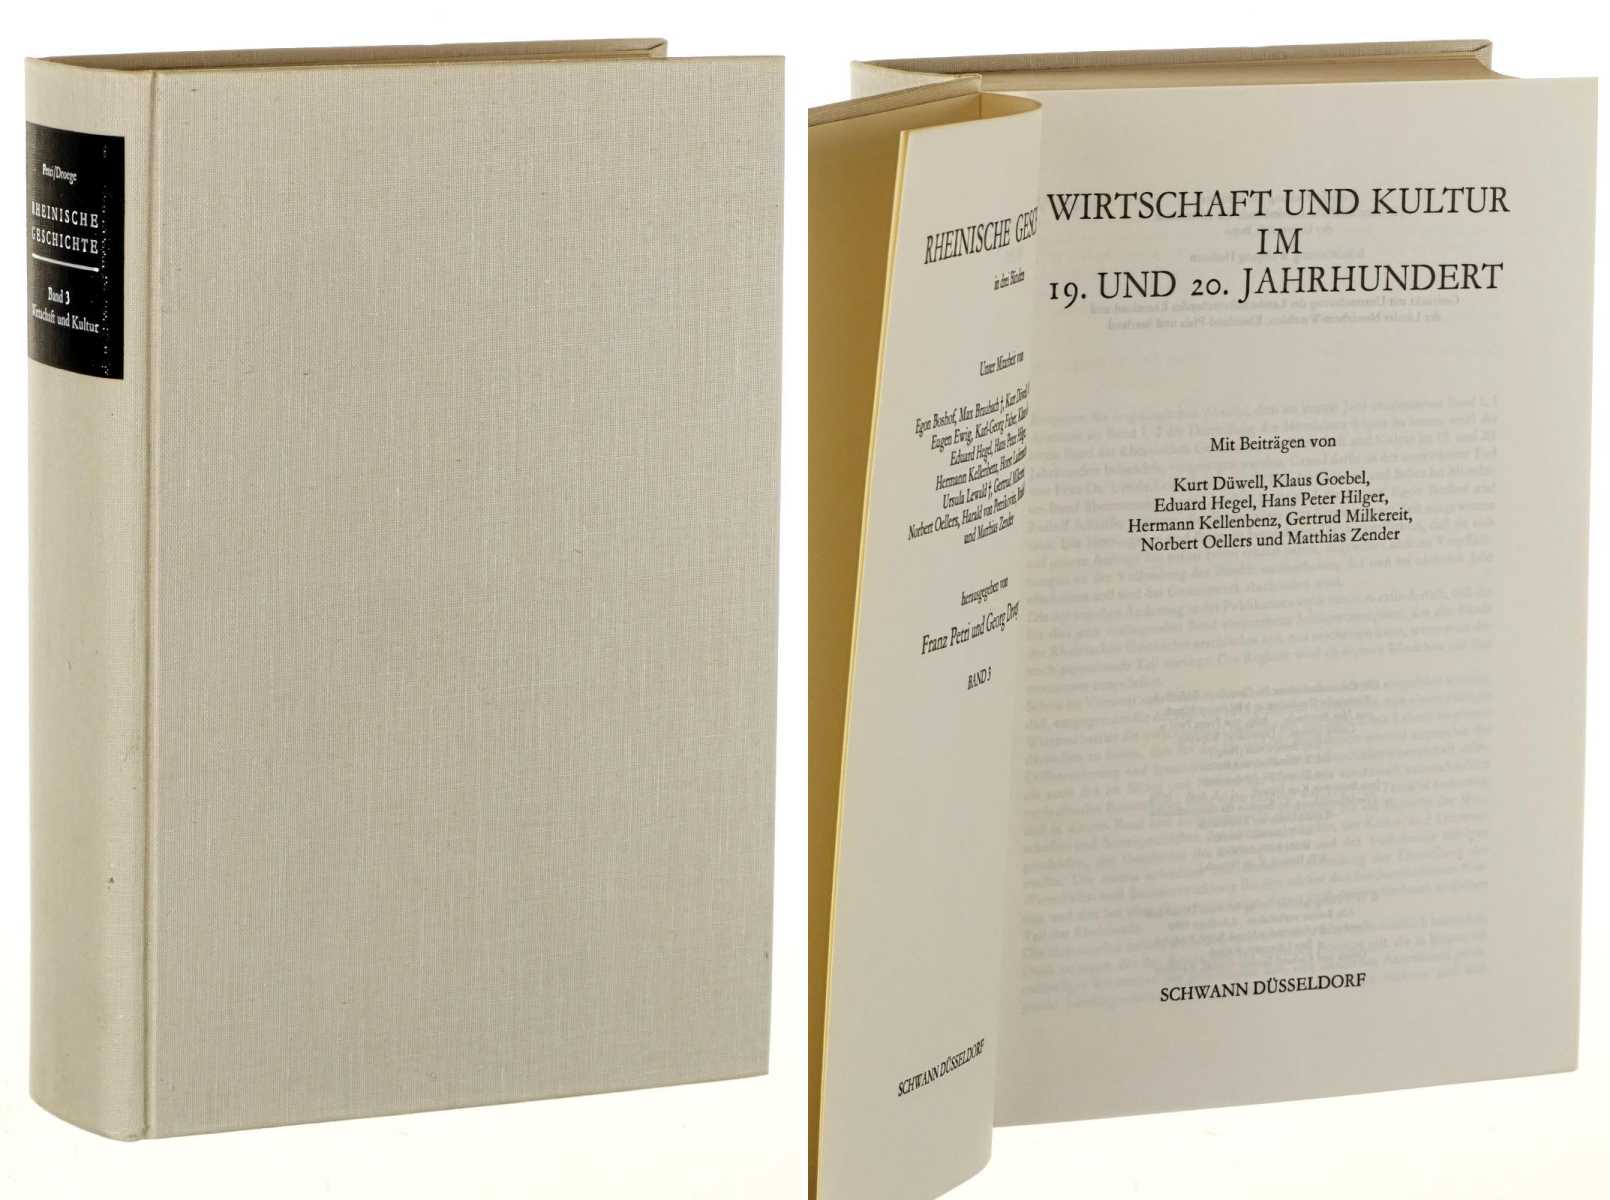   Rheinische Geschichte in 3 Bänden. Hrsg. von Franz Petri u. Georg Droege. Nur Band 3: Wirtschaft und Kultur im 19. und 20. Jahrhundert. Mit Beitr. von Kurt Düwell u.a. 